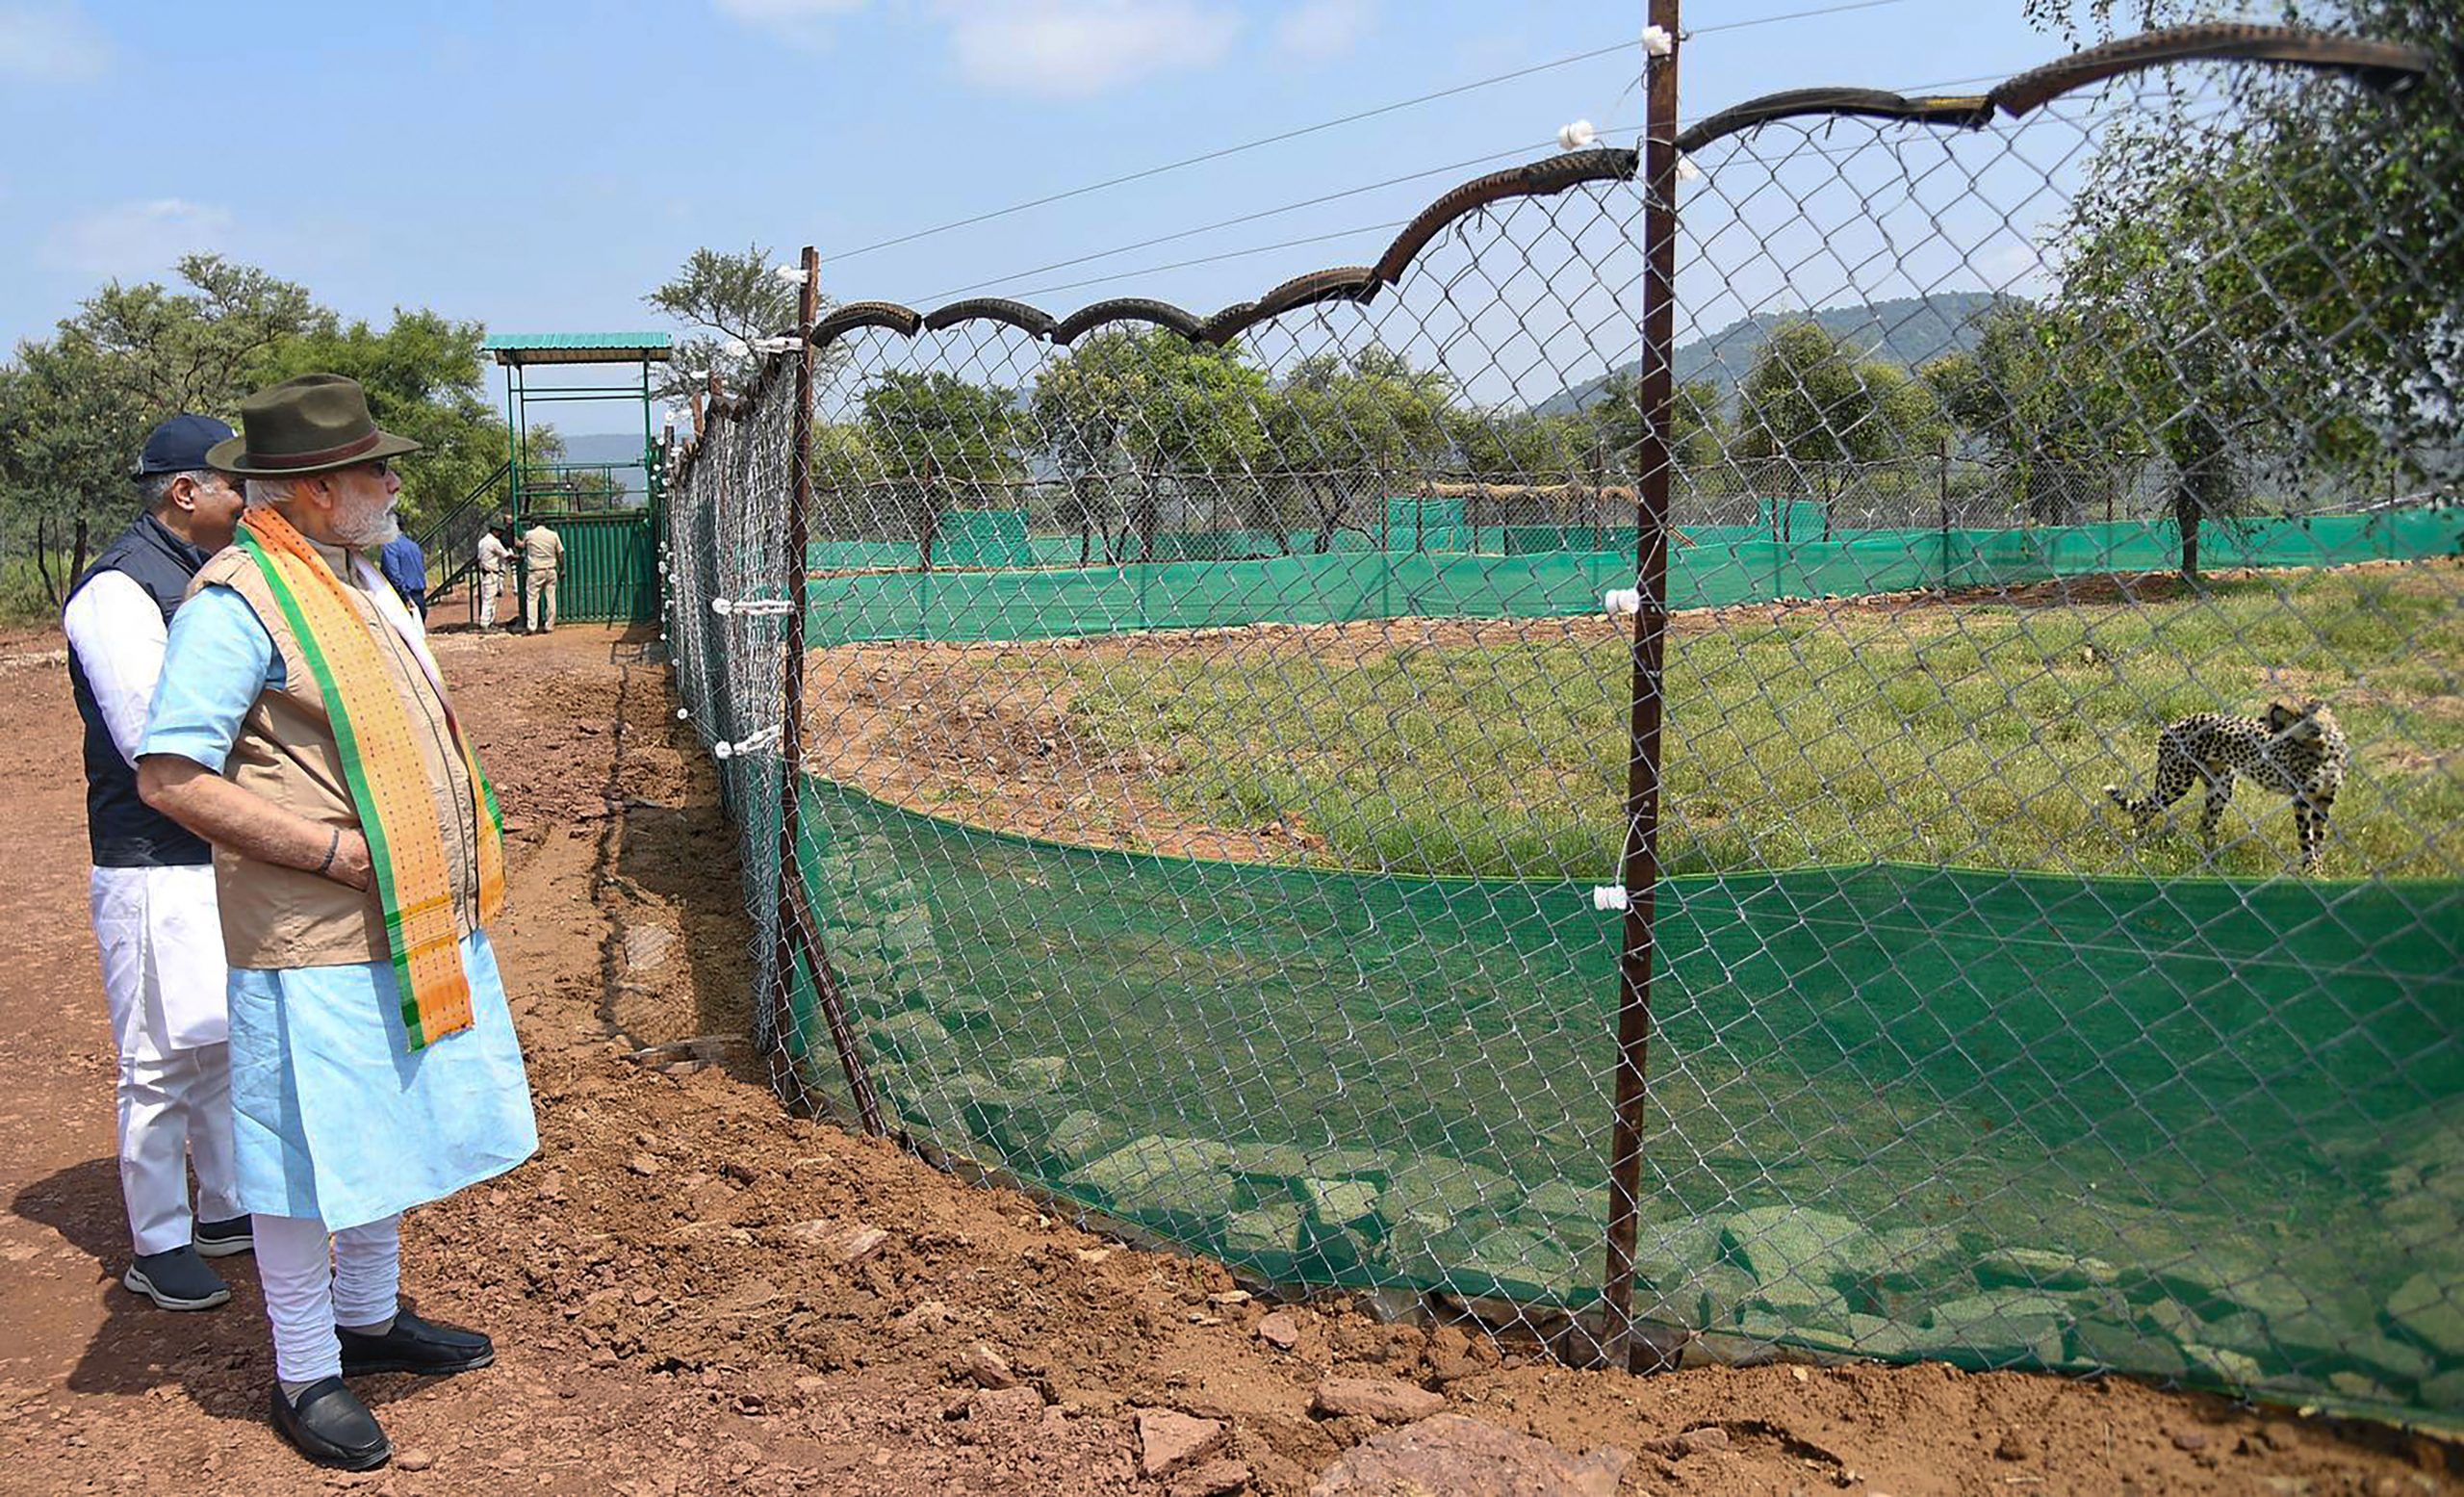 PM मोदी ने नामीबिया से लाए गए चीतों को कूनो नेशनल पार्क में छोड़ा, PICS-VIDEO देखें